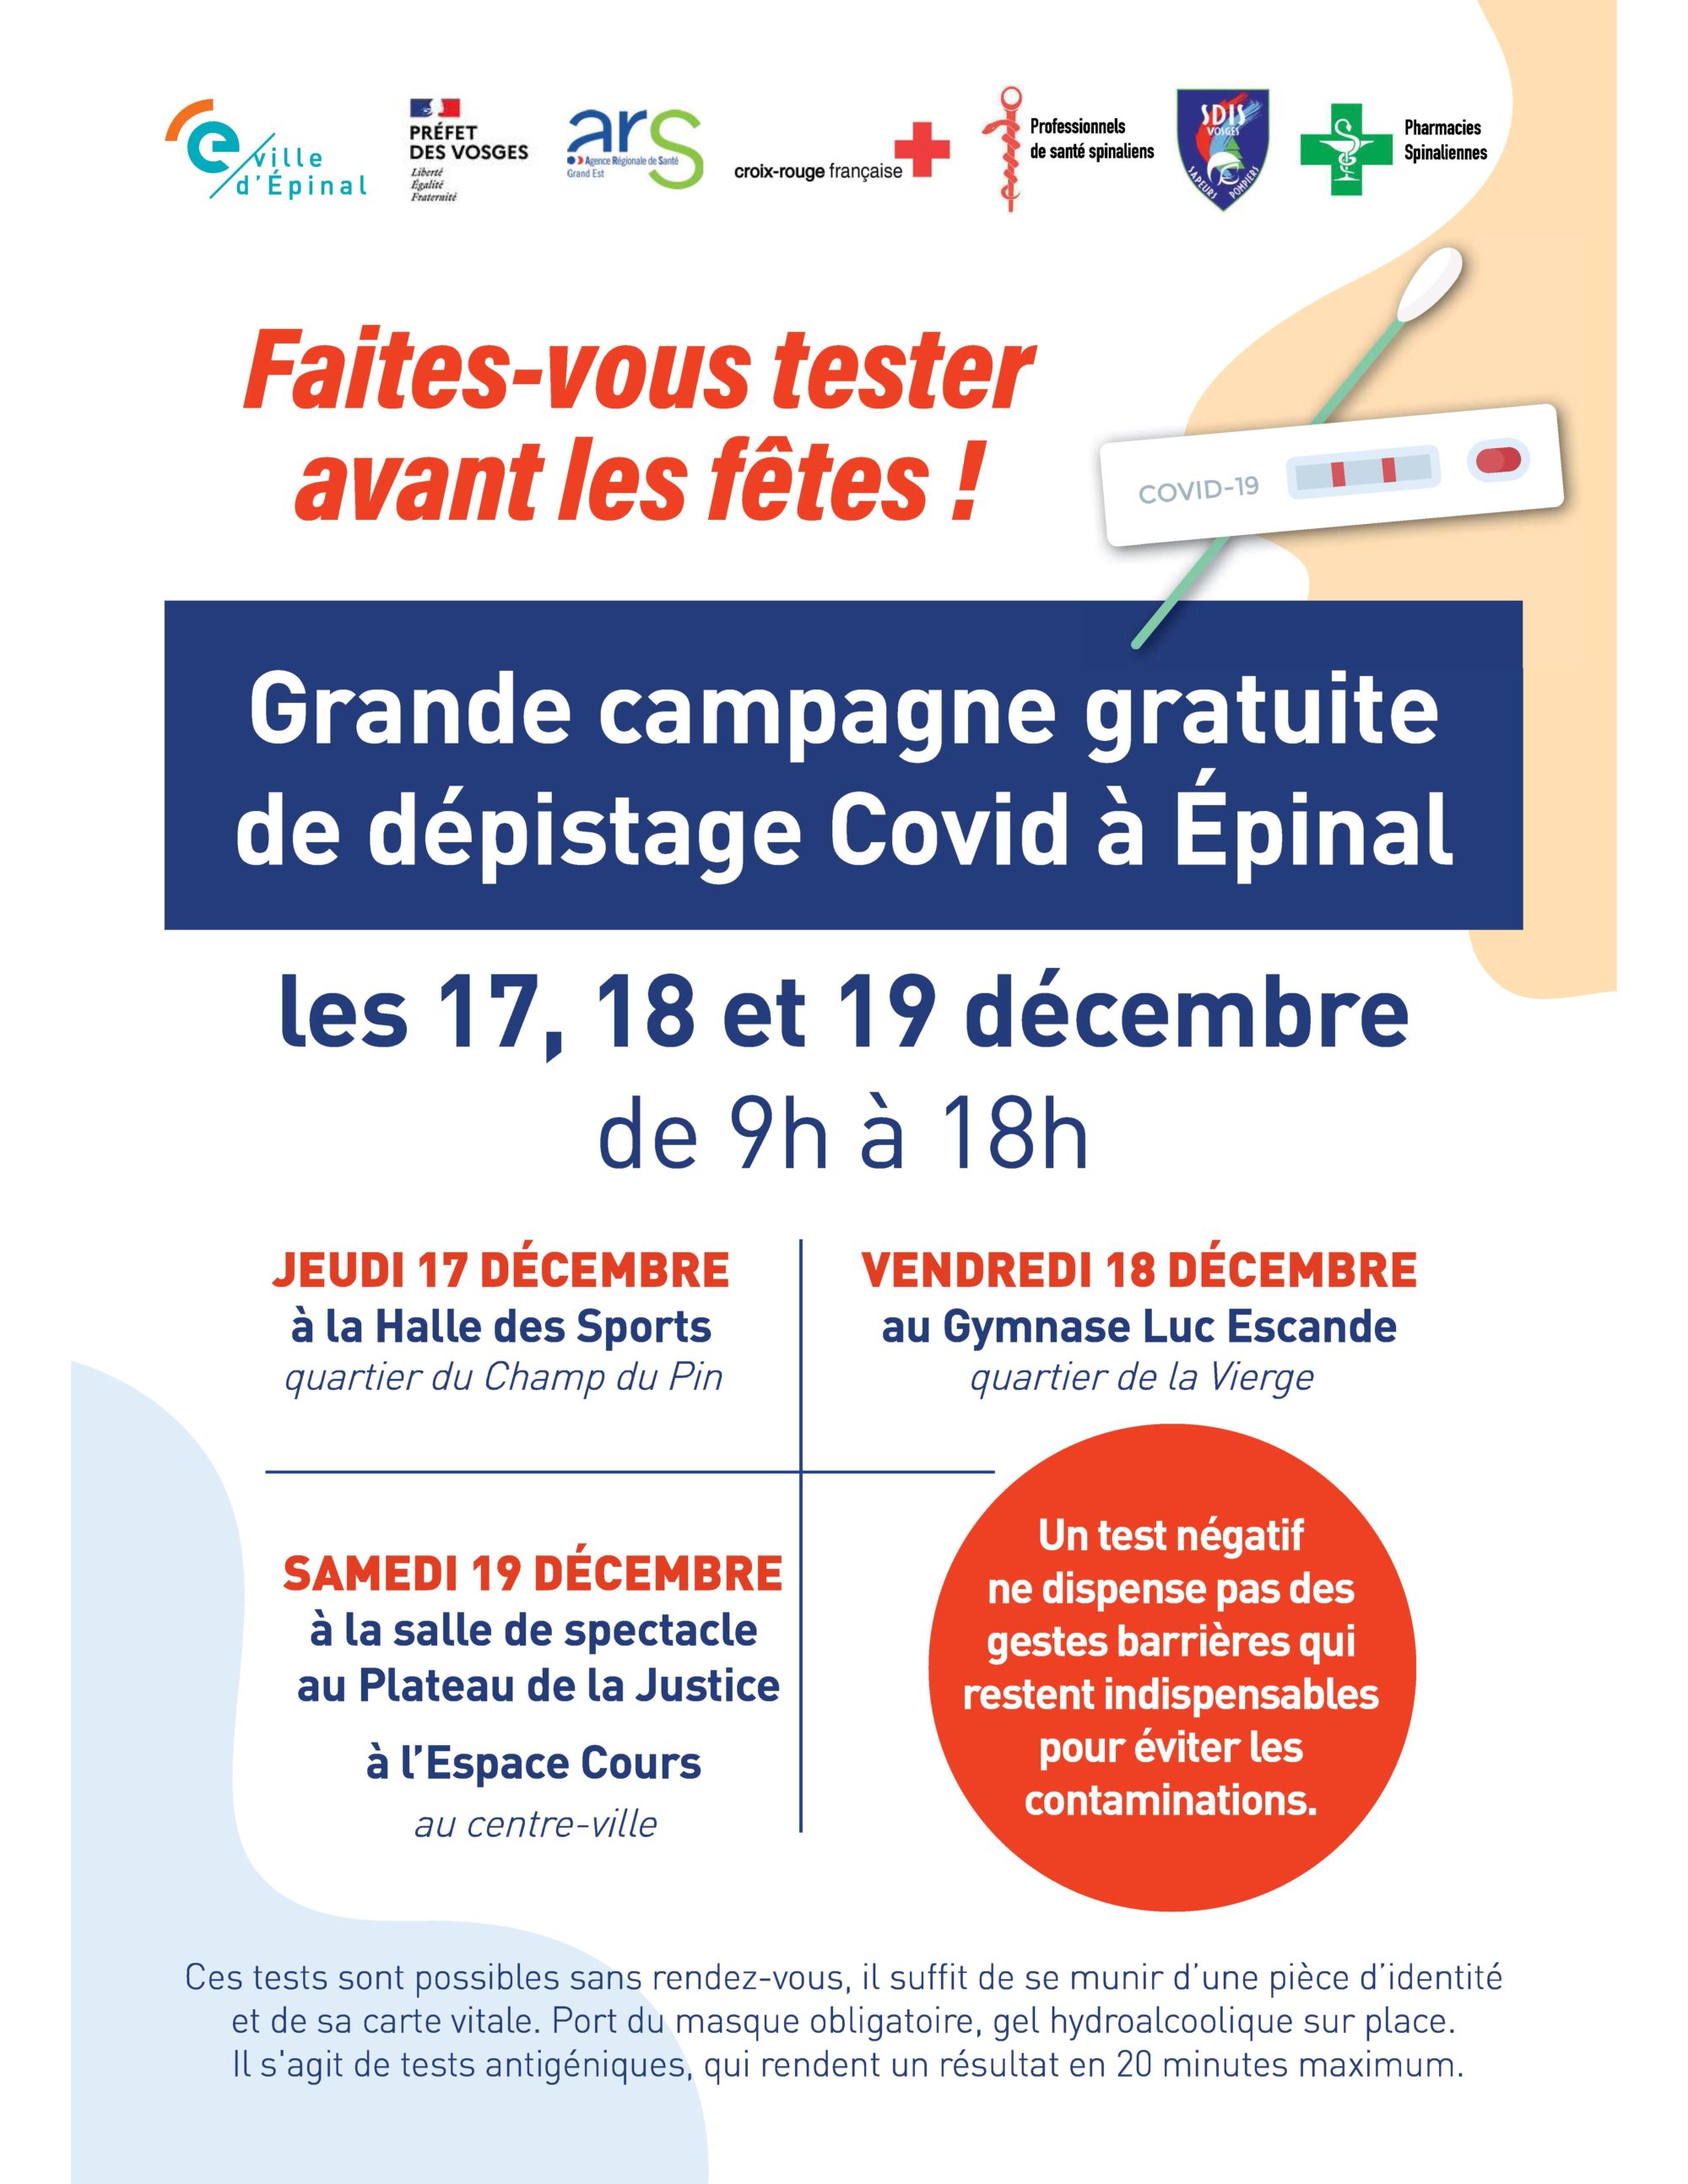 Covid-19 : dépistage gratuit les 17, 18 et 19 décembre à Epinal